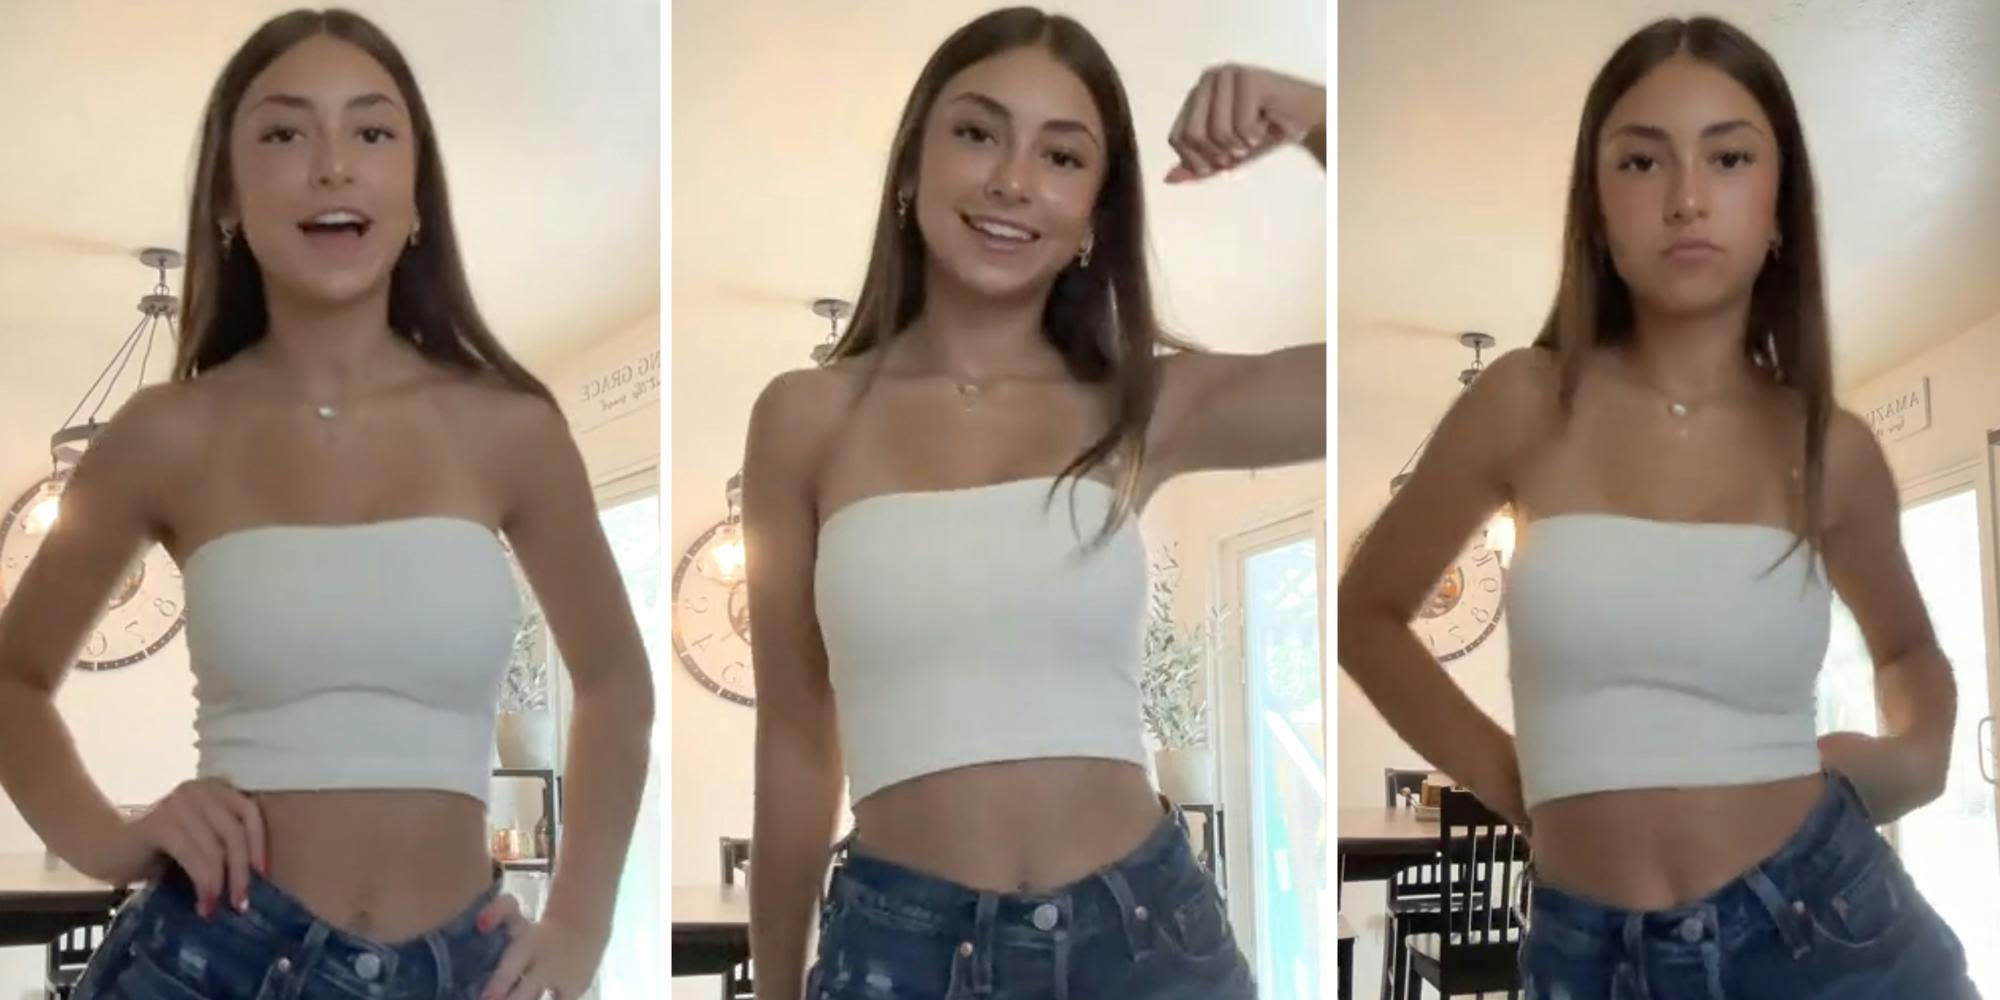 White tube top girl's viral TikTok dance turns her into a meme